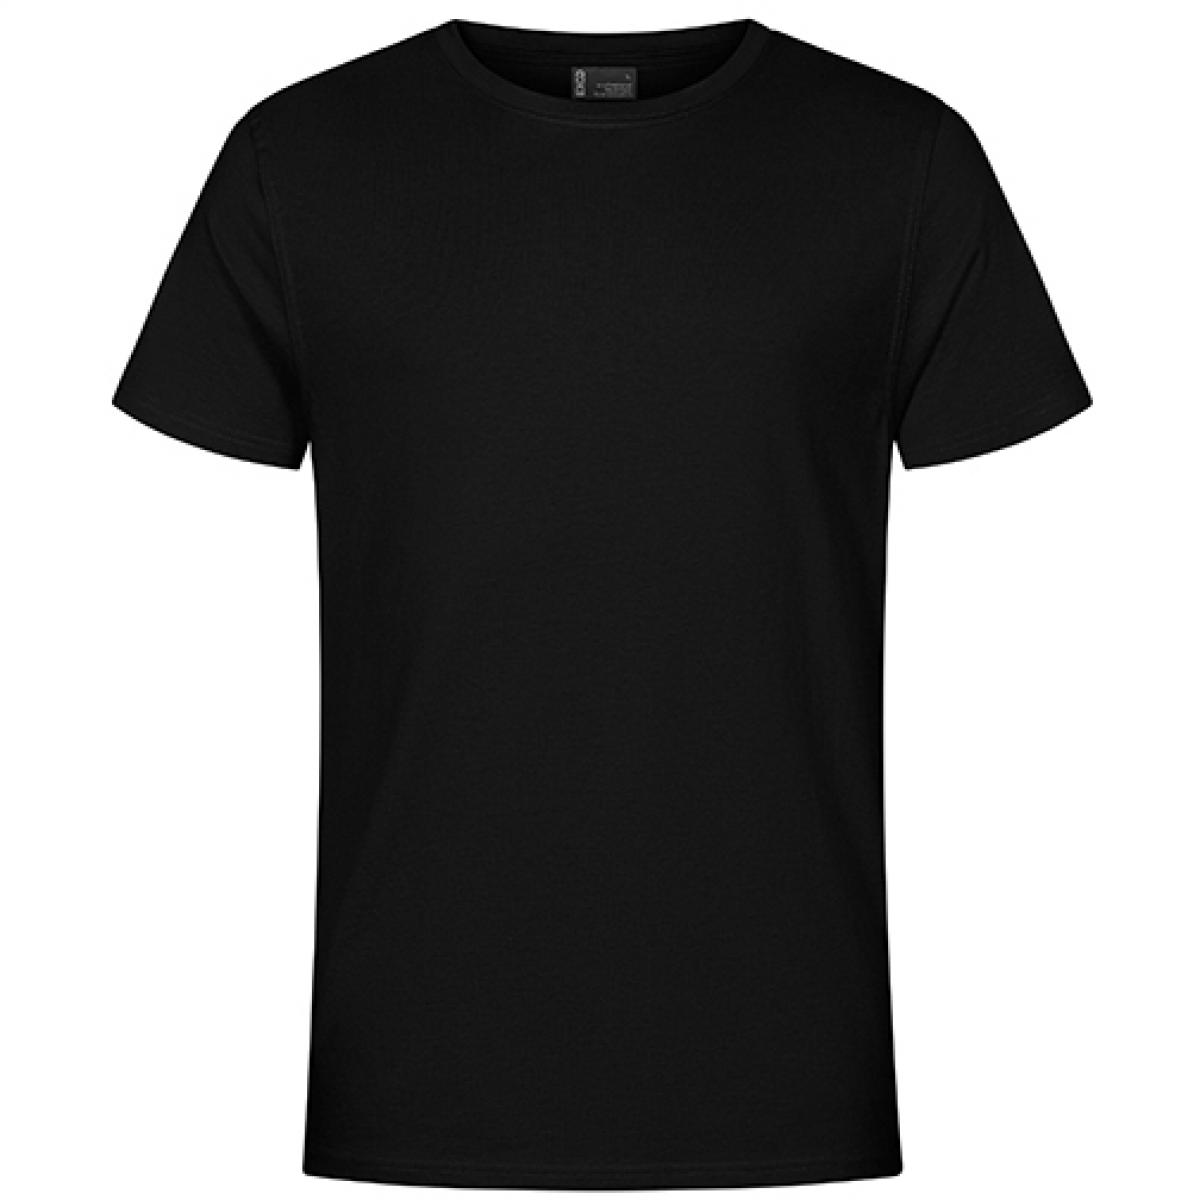 Hersteller: EXCD by Promodoro Herstellernummer: 3077 Artikelbezeichnung: Herren T-Shirt, Single-Jersey Farbe: Black